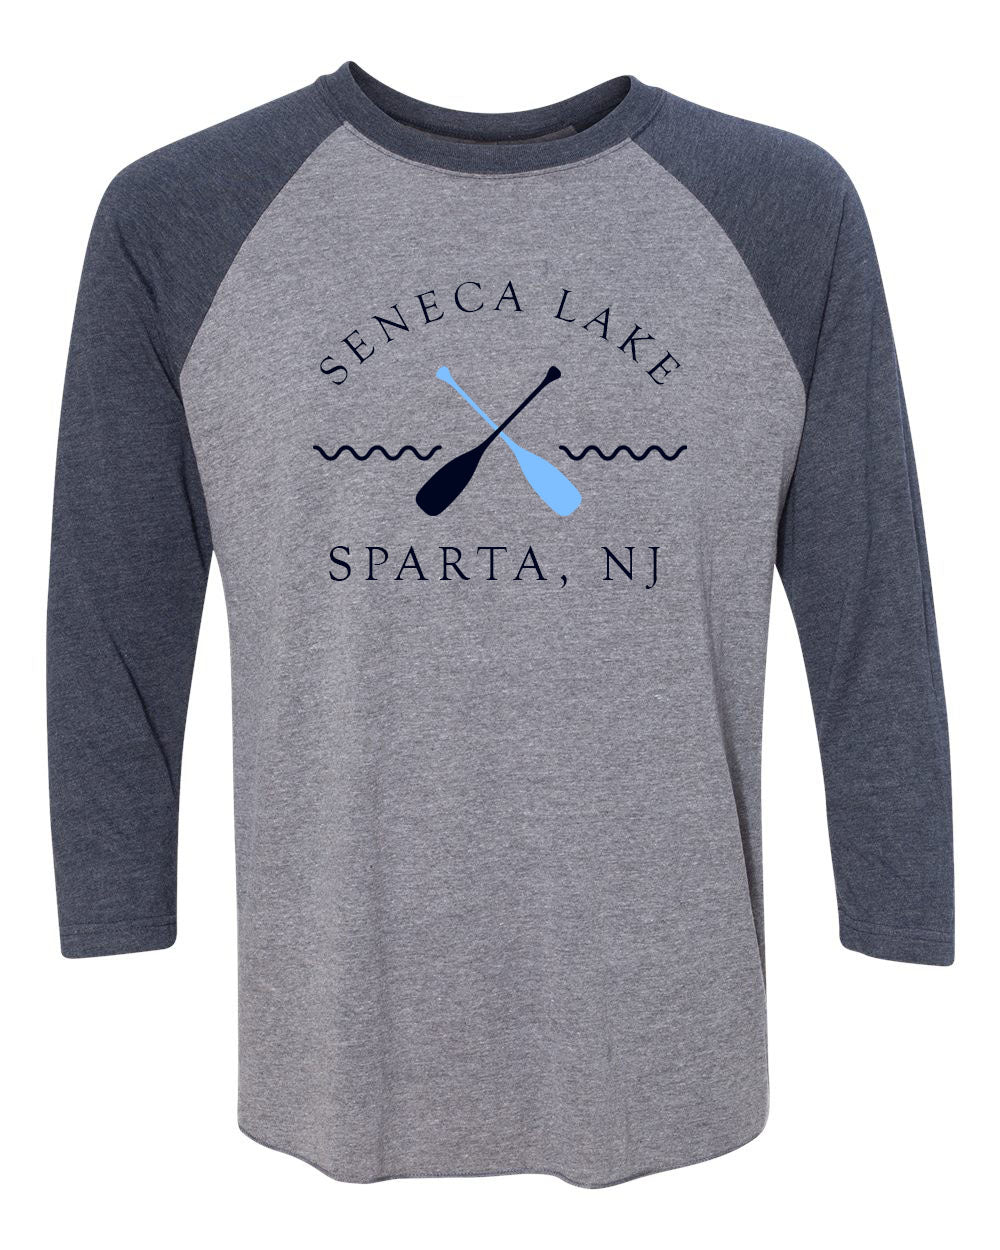 Seneca Lake design 5 raglan shirt